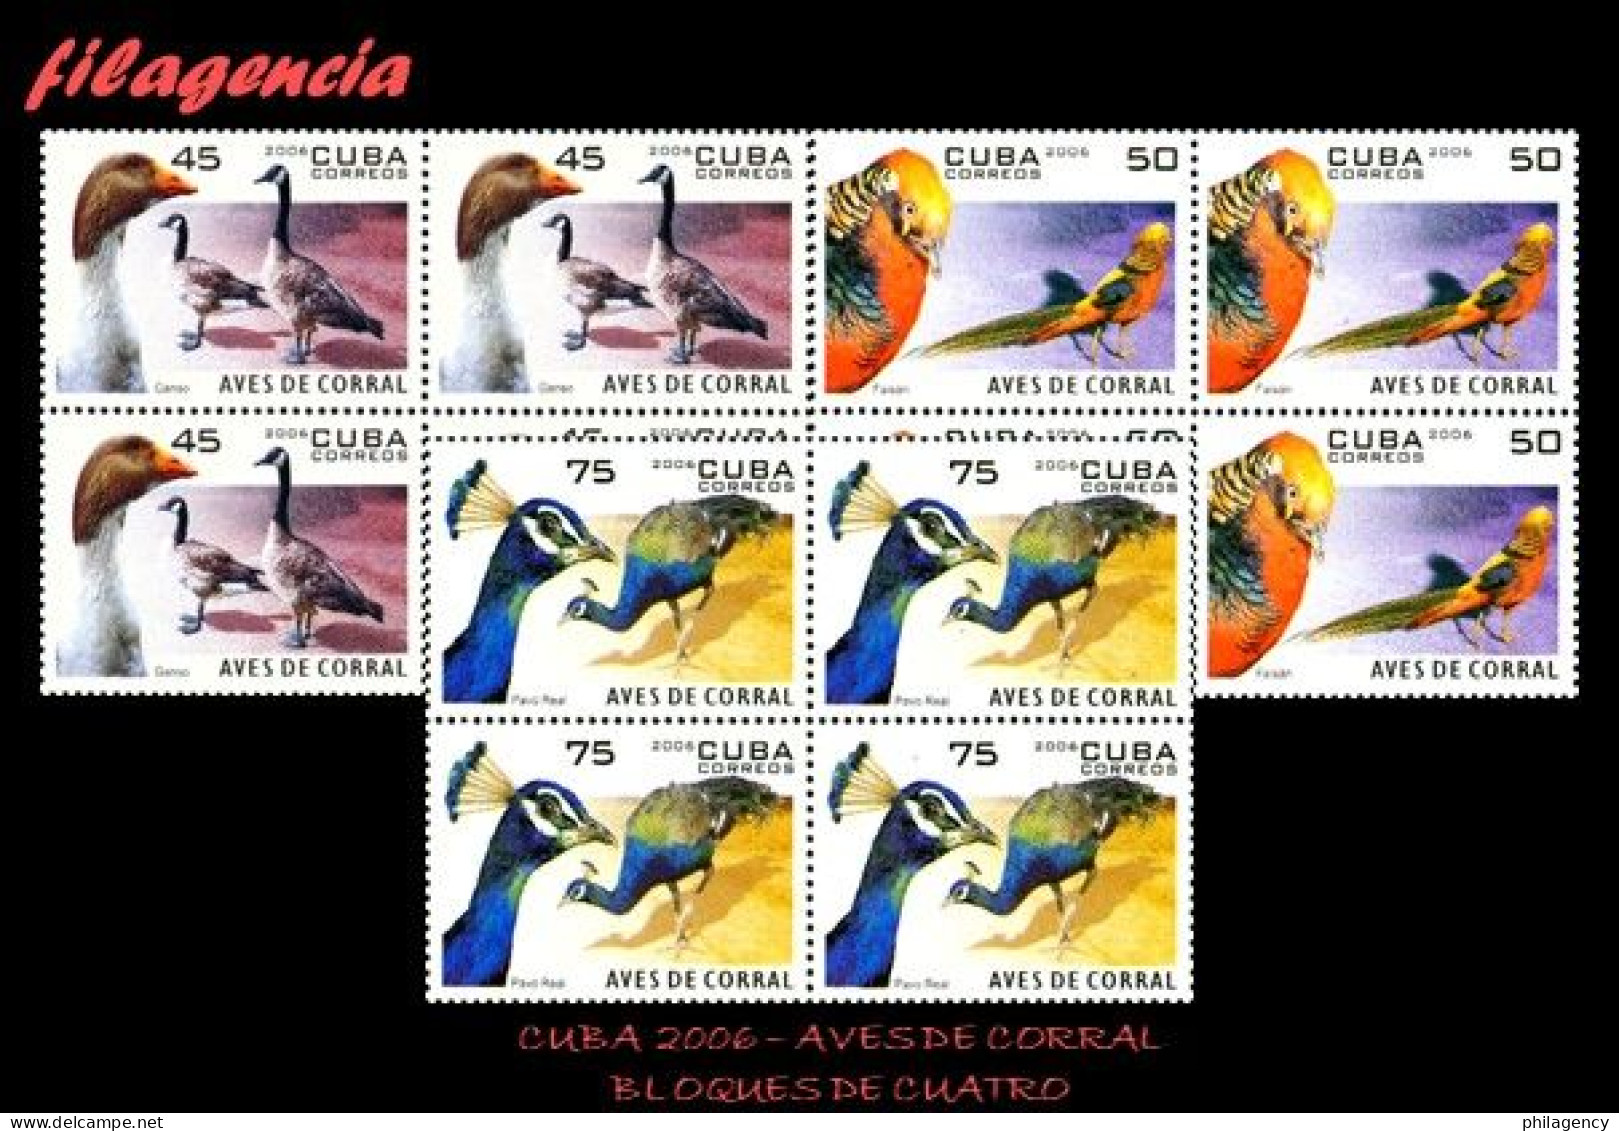 CUBA. BLOQUES DE CUATRO. 2006-13 FAUNA. AVES DE CORRAL - Ungebraucht